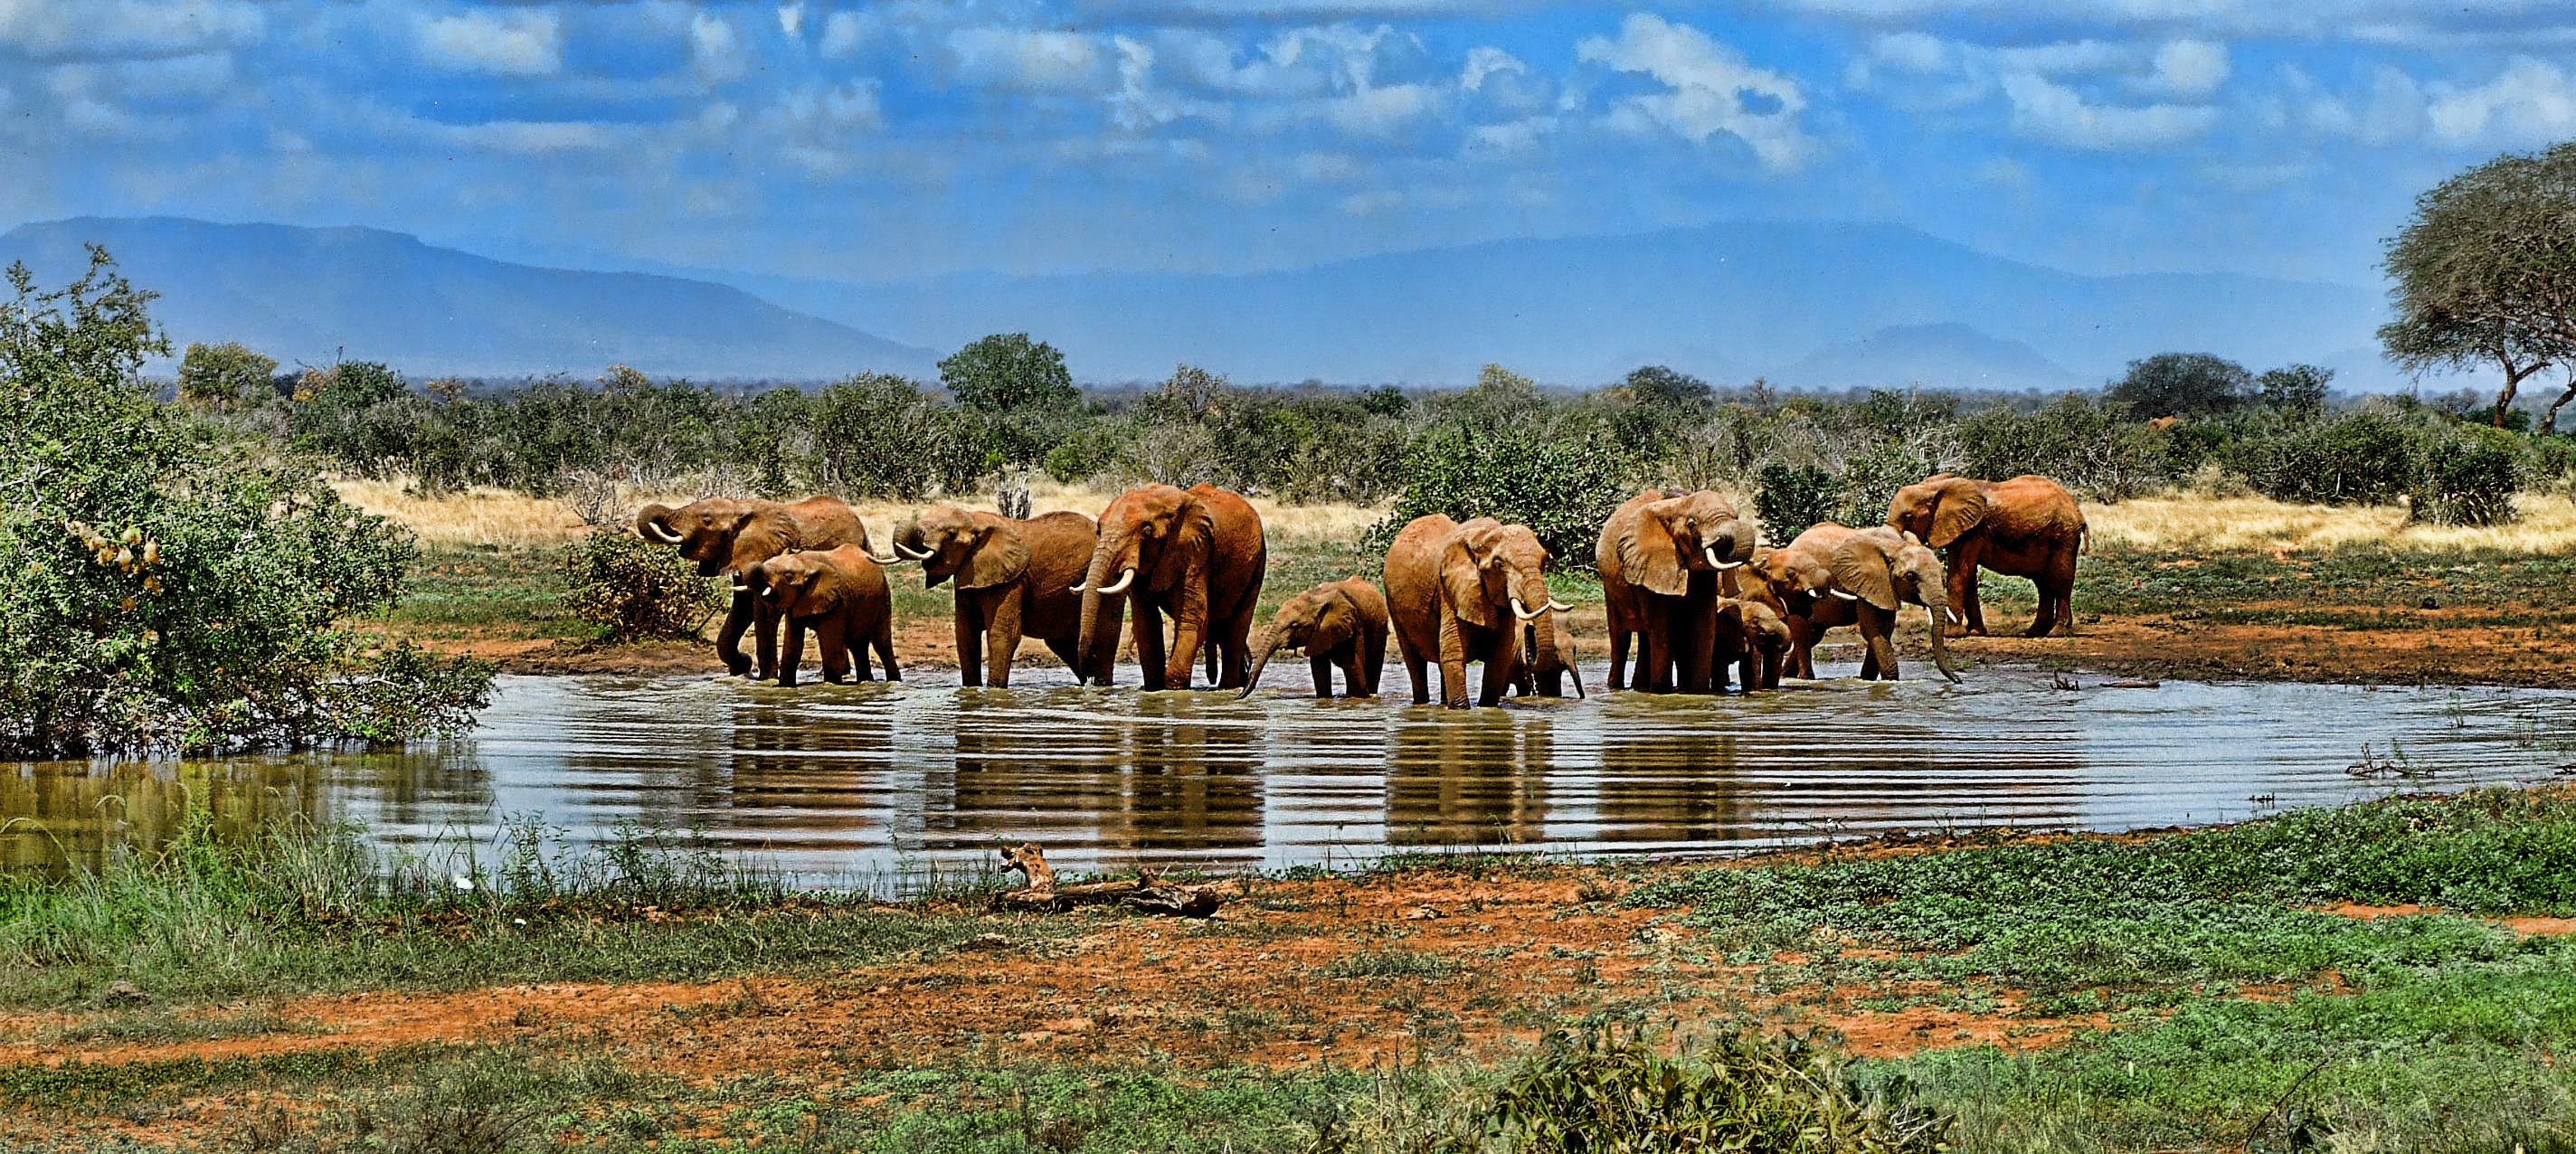 Фото слон Сафари ранчо - бесплатные картинки на Fonwall